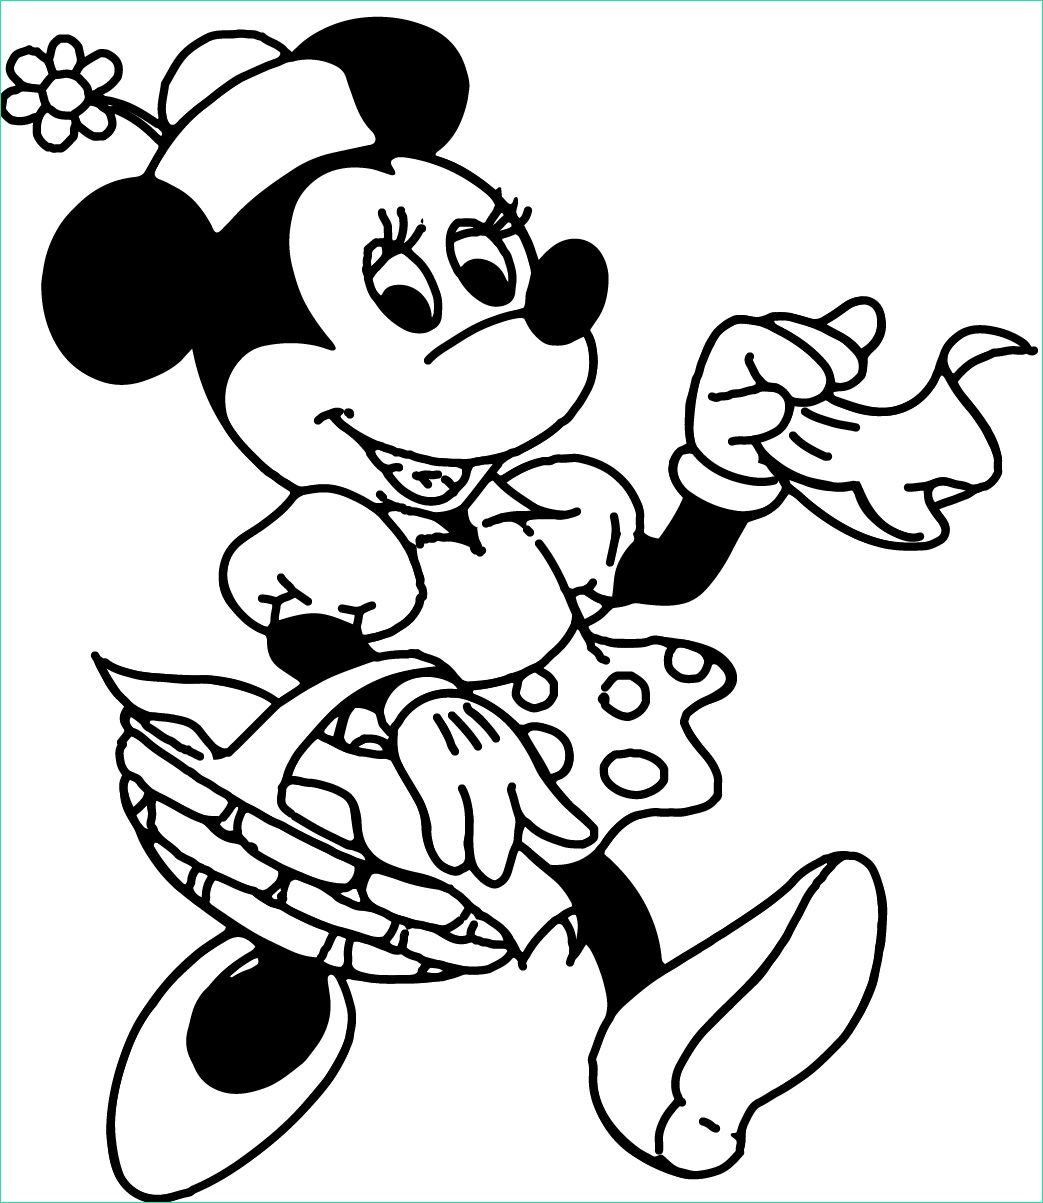 Minnie Mouse Coloriage Cool Images Páginas Para Colorear originales original Coloring Pages